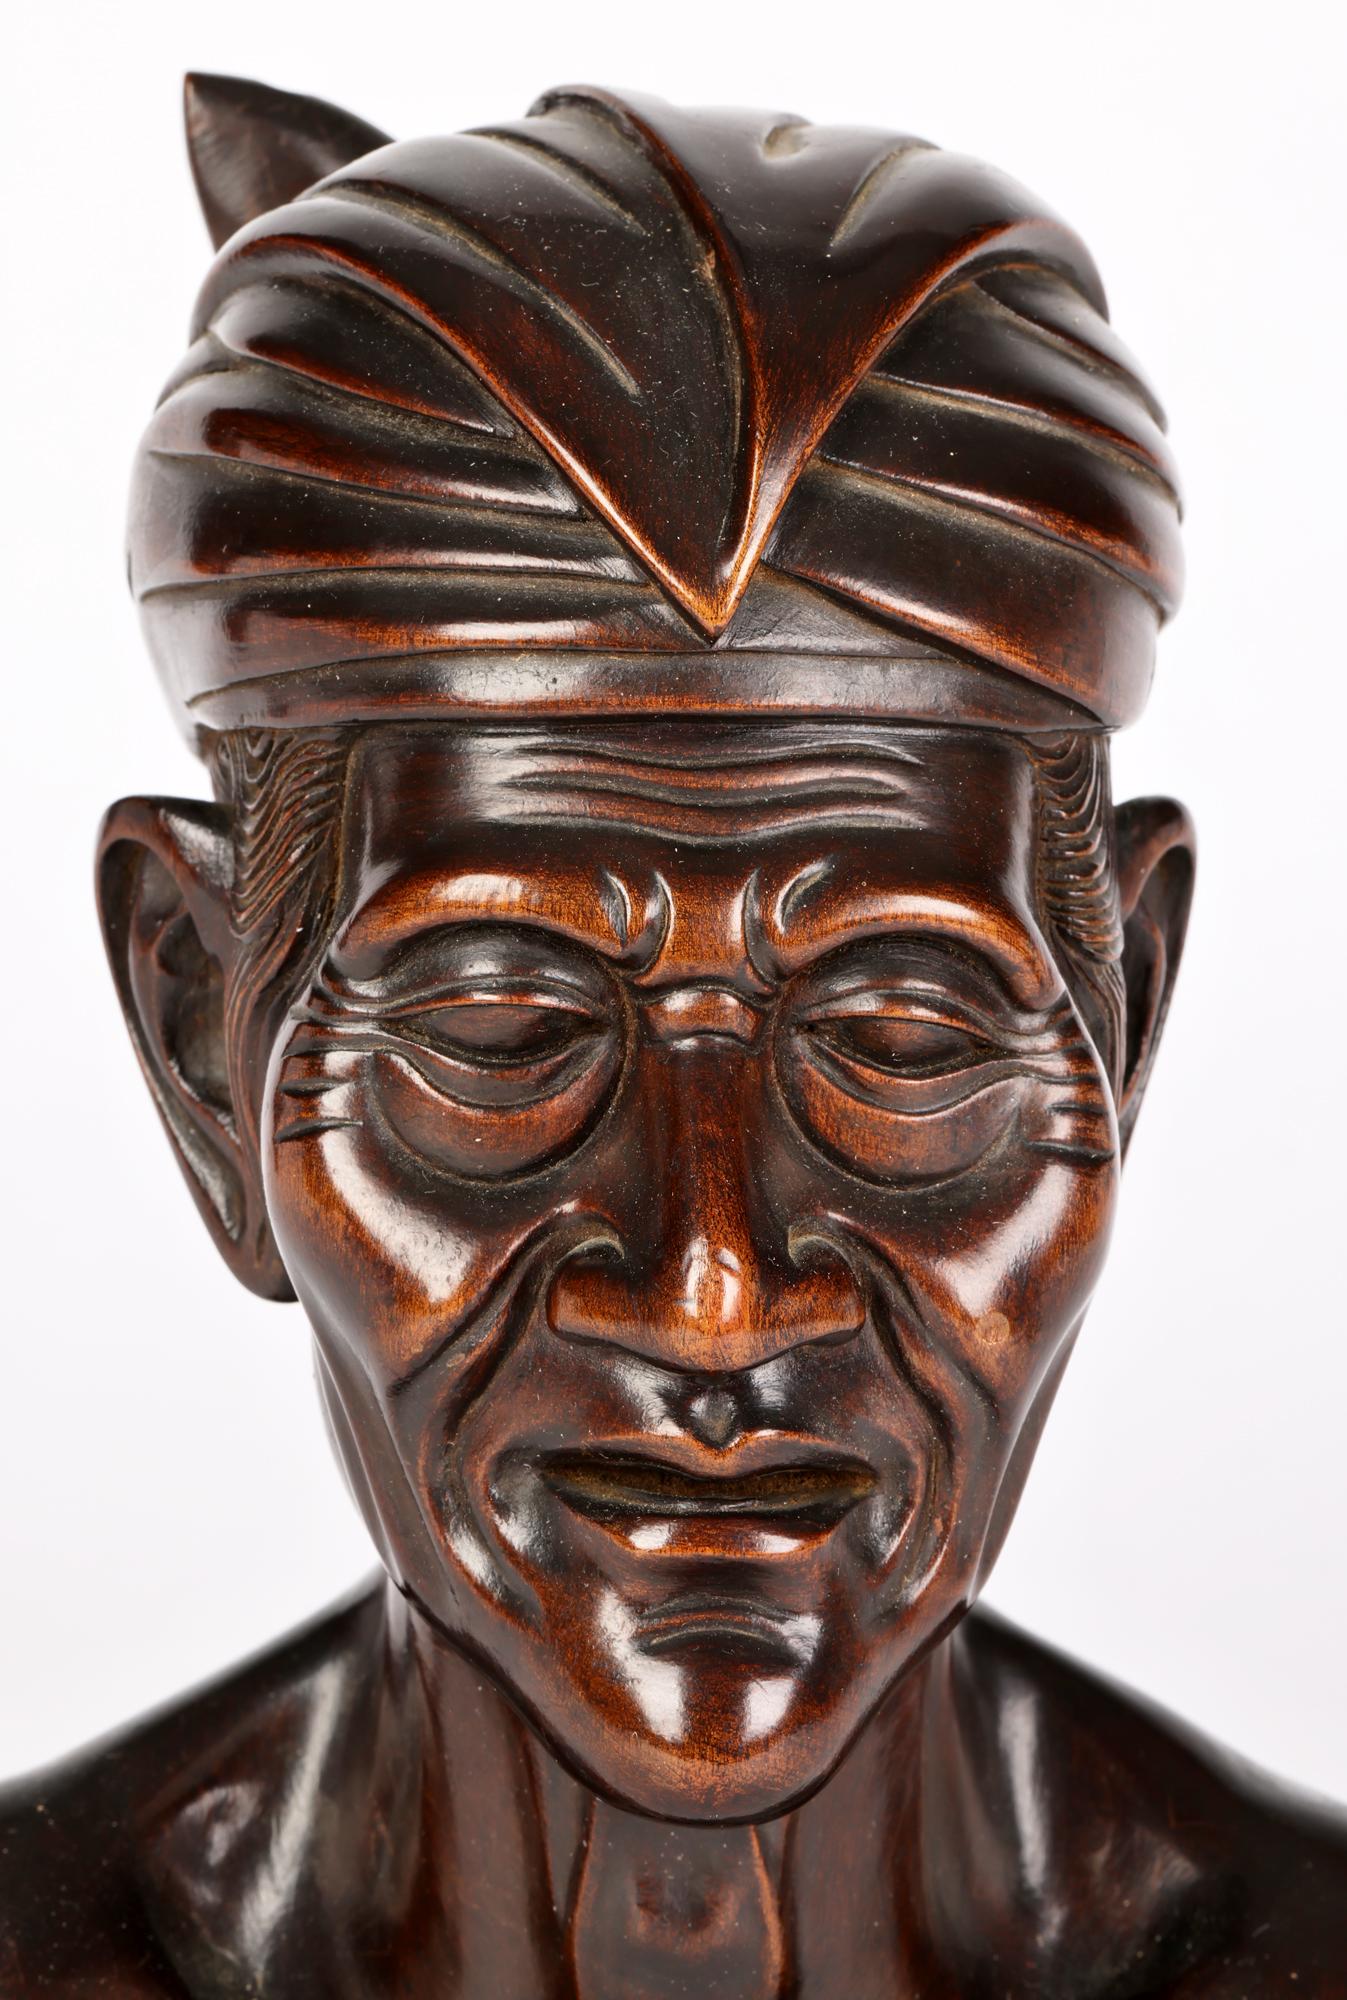 Eine gut geschnitzte hölzerne Porträtbüste eines älteren Mannes, geschnitzt von einem balinesischen Künstler um die Mitte des 20. Jahrhunderts. Die Büste ist aus einem einzigen Stück Holz geschnitzt und zeigt den Mann mit der traditionellen